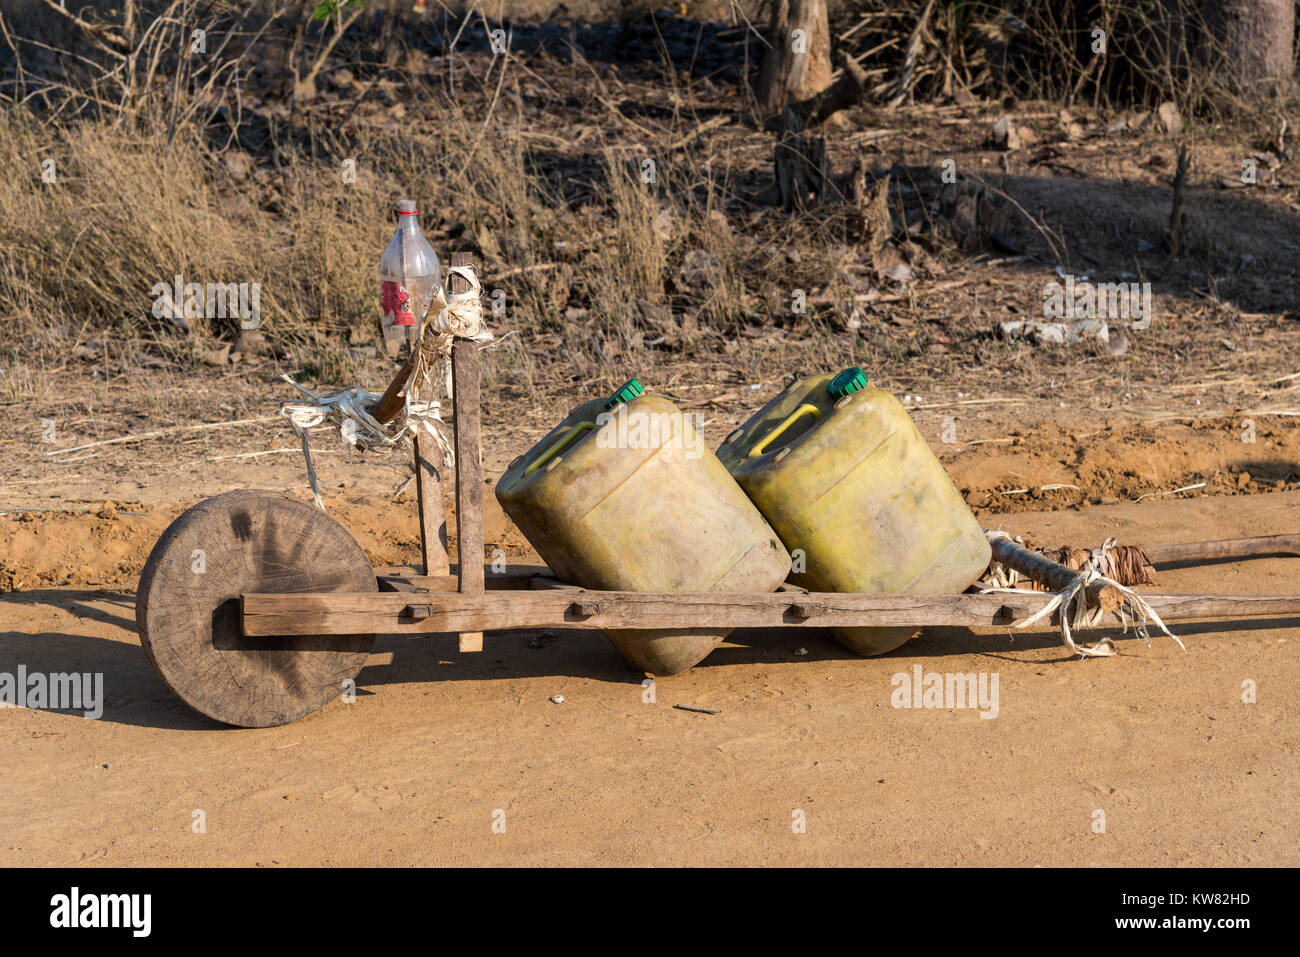 Une main en bois panier chargé avec deux grandes cruches d'eau que les habitants utilisent pour transporter l'eau rare en saison sèche. Morondava. Madagascar, l'Afrique. Banque D'Images